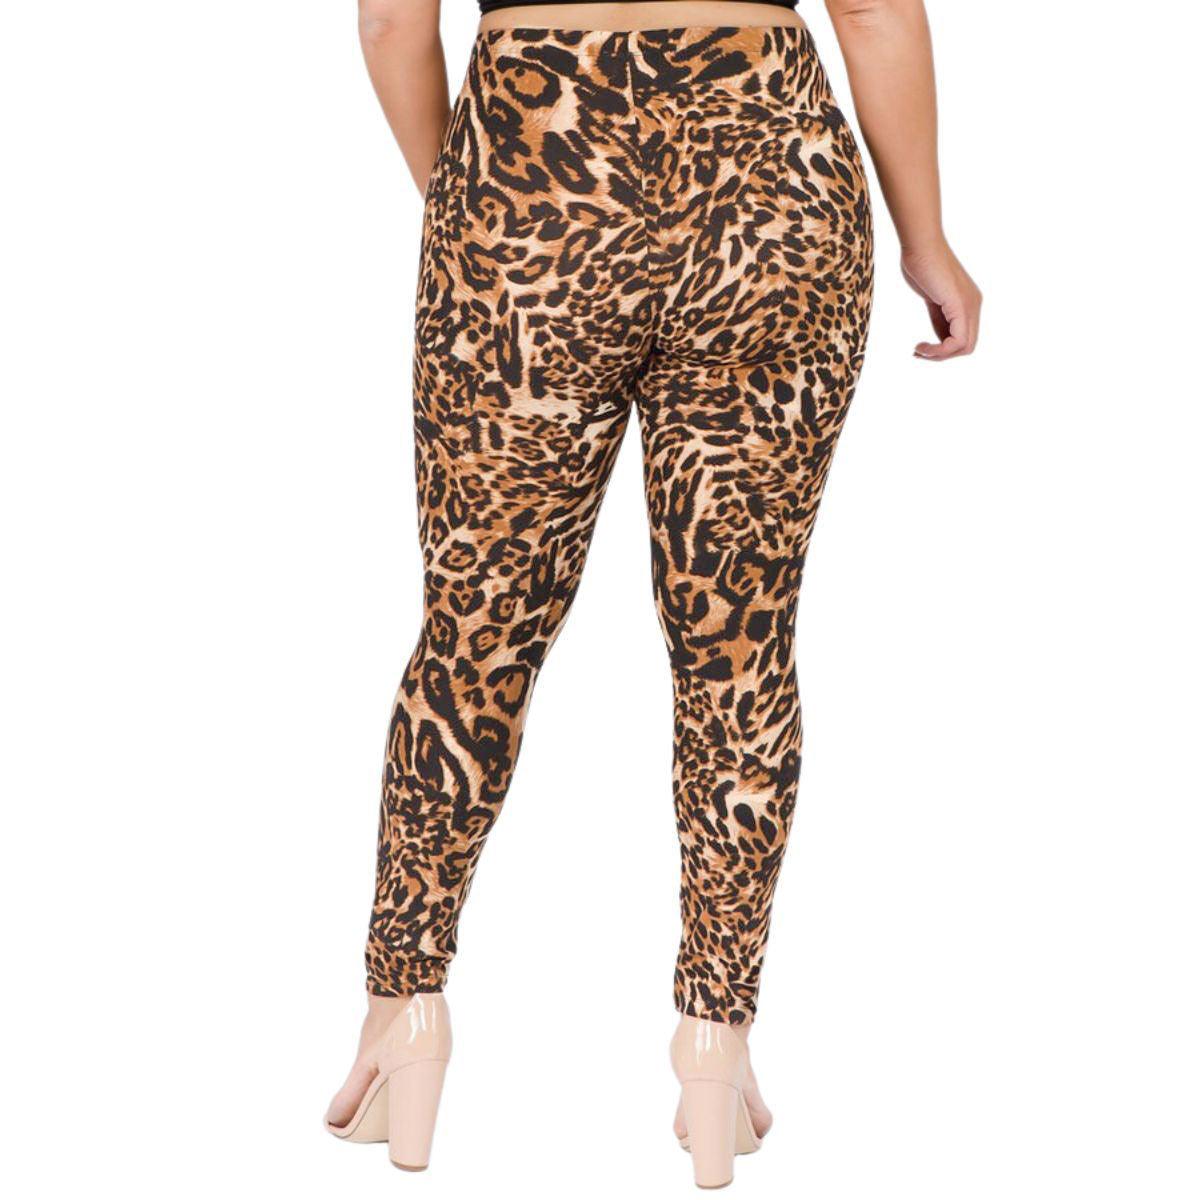 Roar in Style: Trendy Plus Size Leopard Print Leggings - Buy Now!